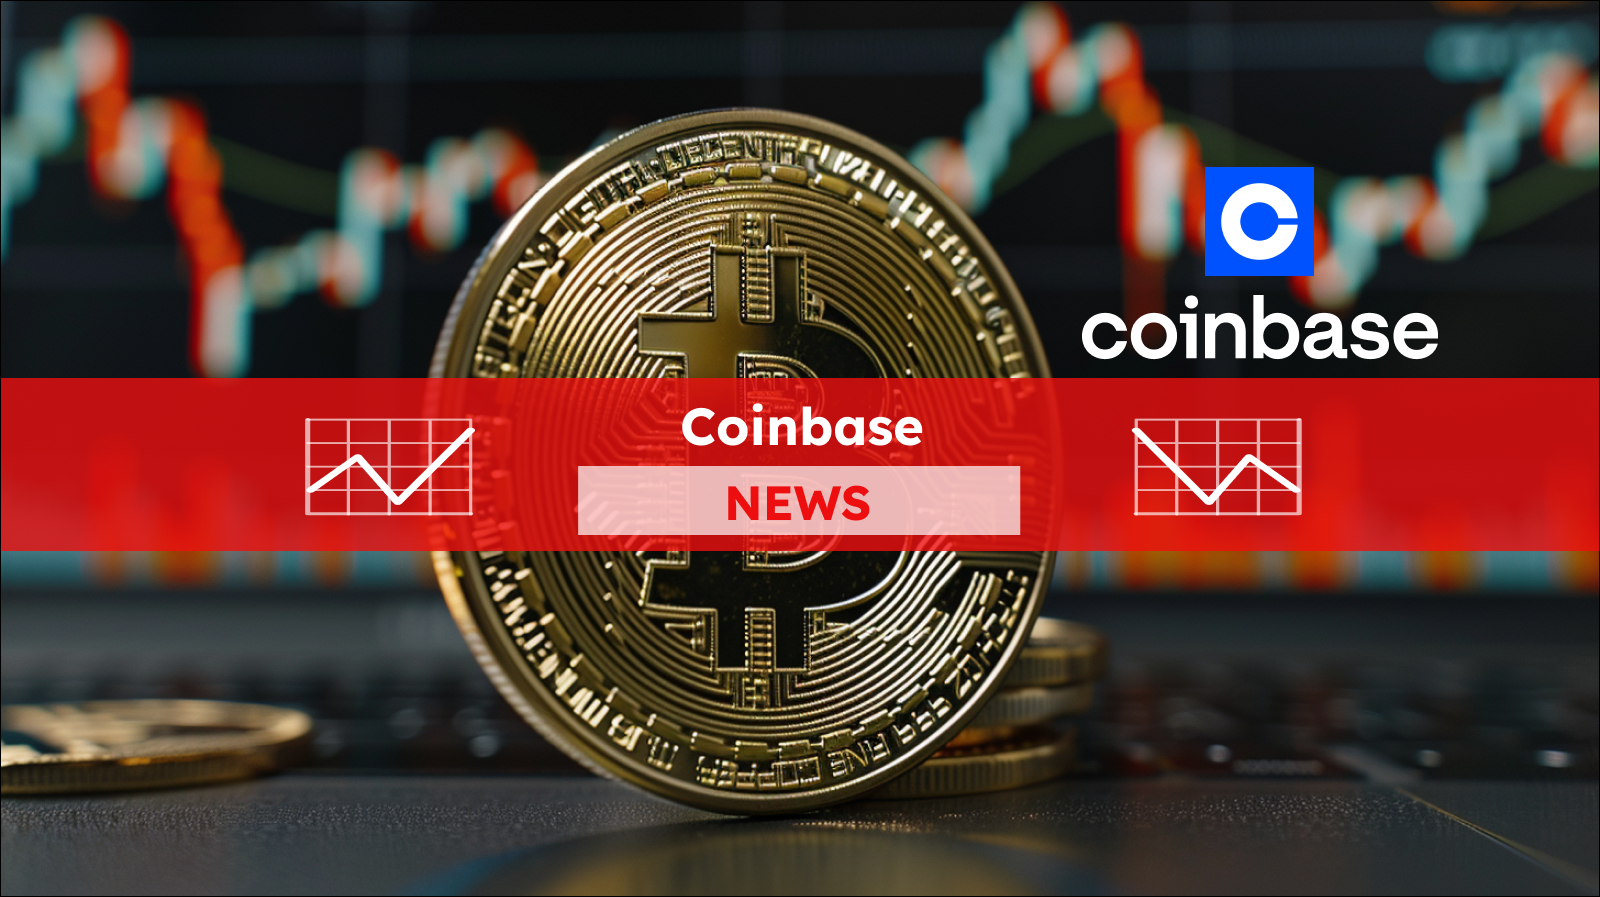 Eine goldene Bitcoin-Münze im Vordergrund mit dem Coinbase-Logo im Hintergrund, überlagert von einem unscharfen Börsenchart, mit einem Coinbase NEWS Banner